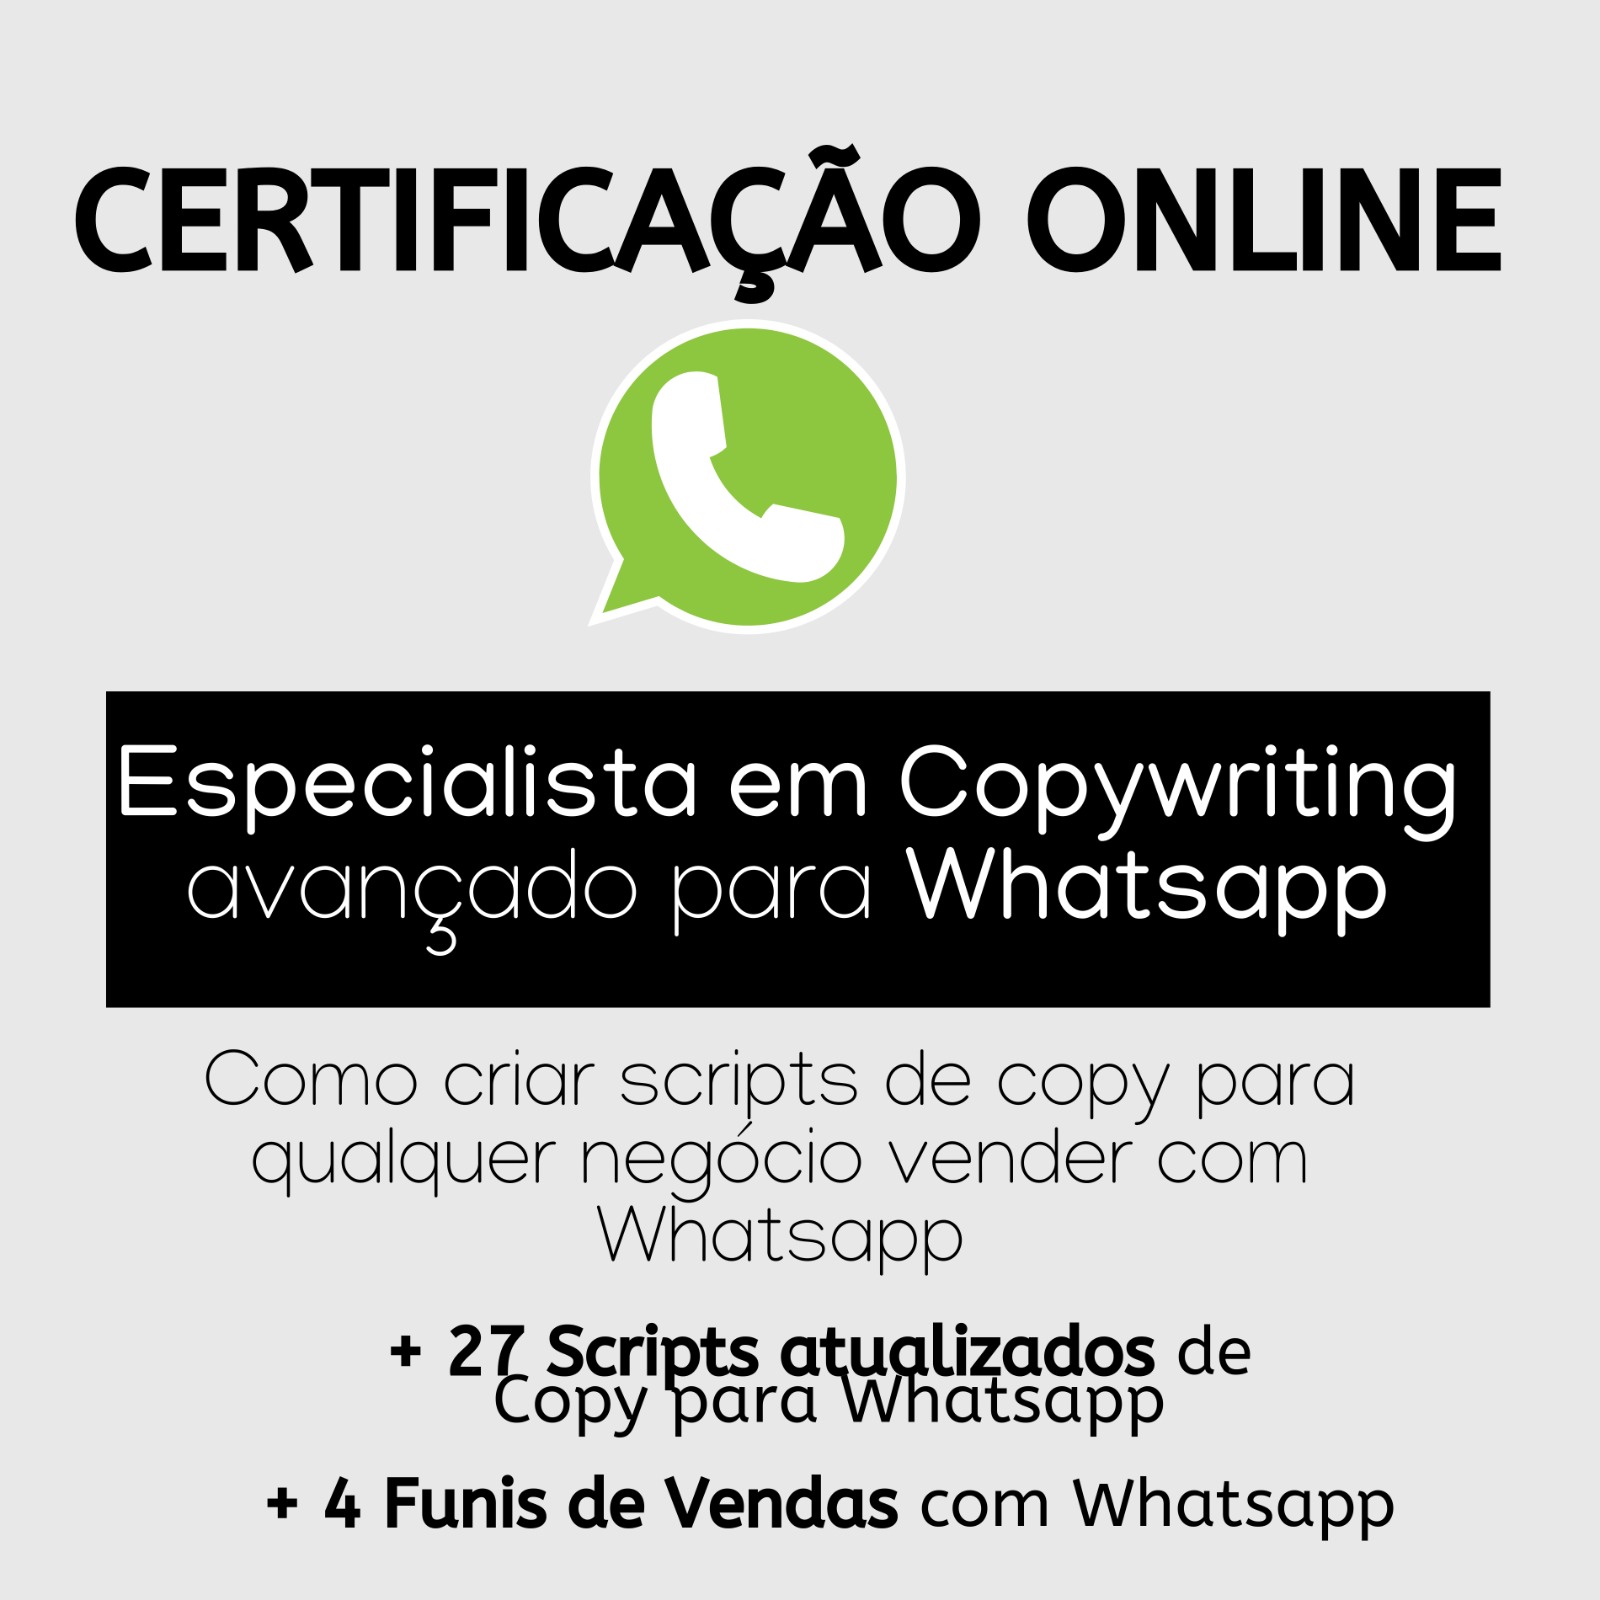 Certificação Especialista em Copywriting Avançado para Whatsapp 216